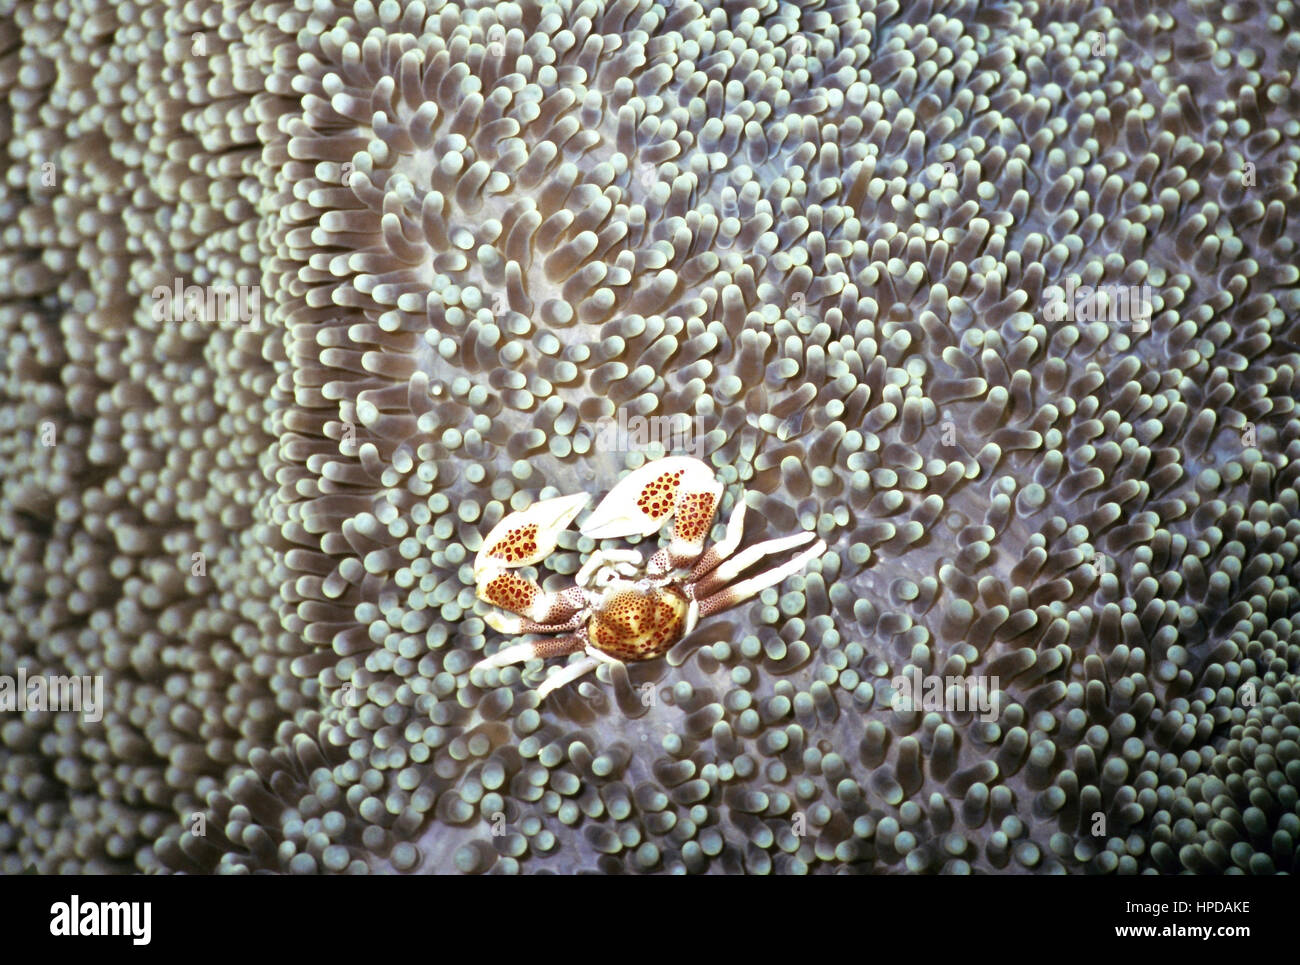 Un crabe porcelaine maculée (Neopetrolisthes maculata) vivant en symbiose dans un Amplexidiscus fenestrafer anémone (tapis). Le nord de Sulawesi, Indonésie Banque D'Images